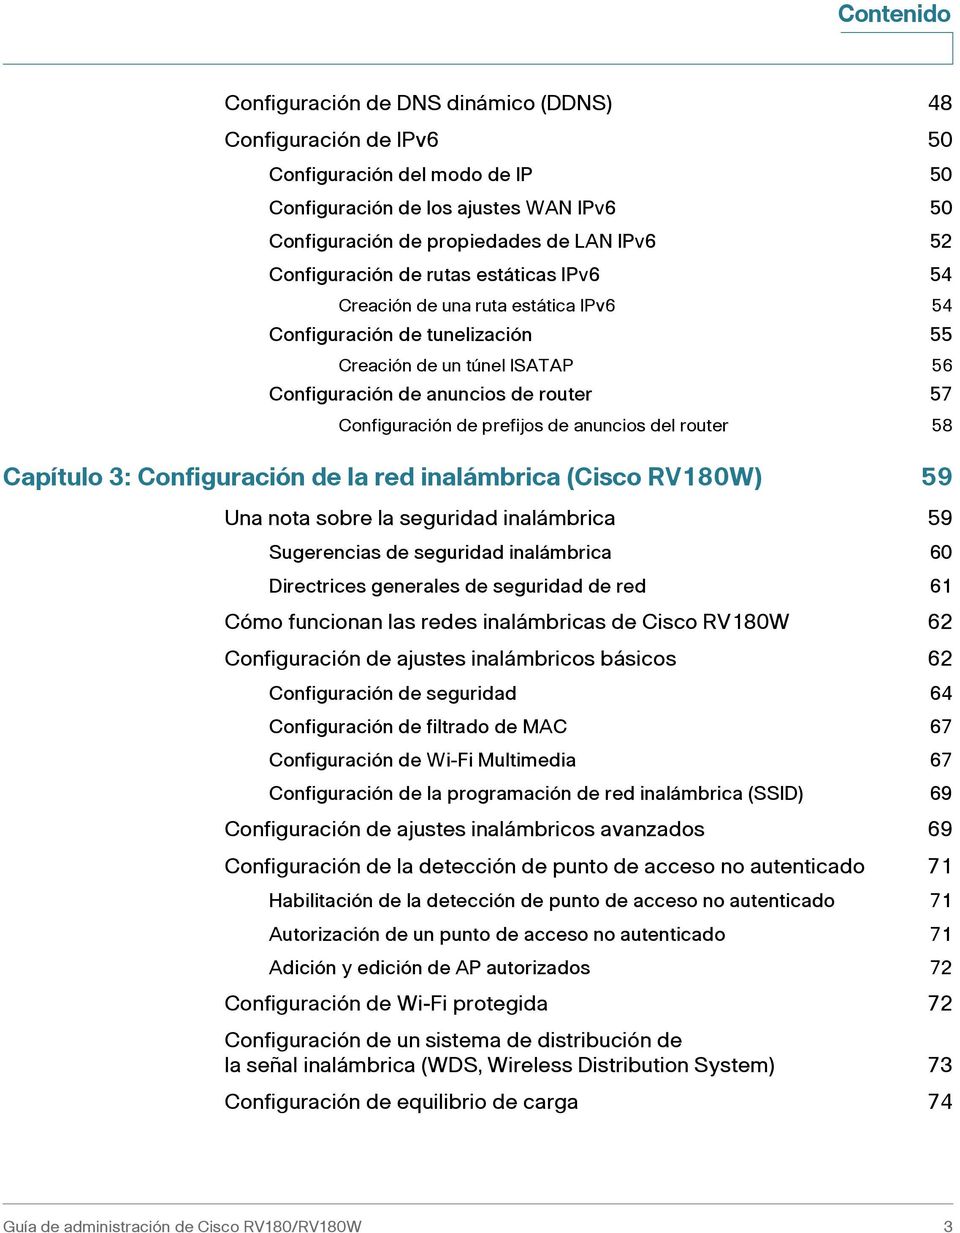 prefijos de anuncios del router 58 Capítulo 3: Configuración de la red inalámbrica (Cisco RV180W) 59 Una nota sobre la seguridad inalámbrica 59 Sugerencias de seguridad inalámbrica 60 Directrices